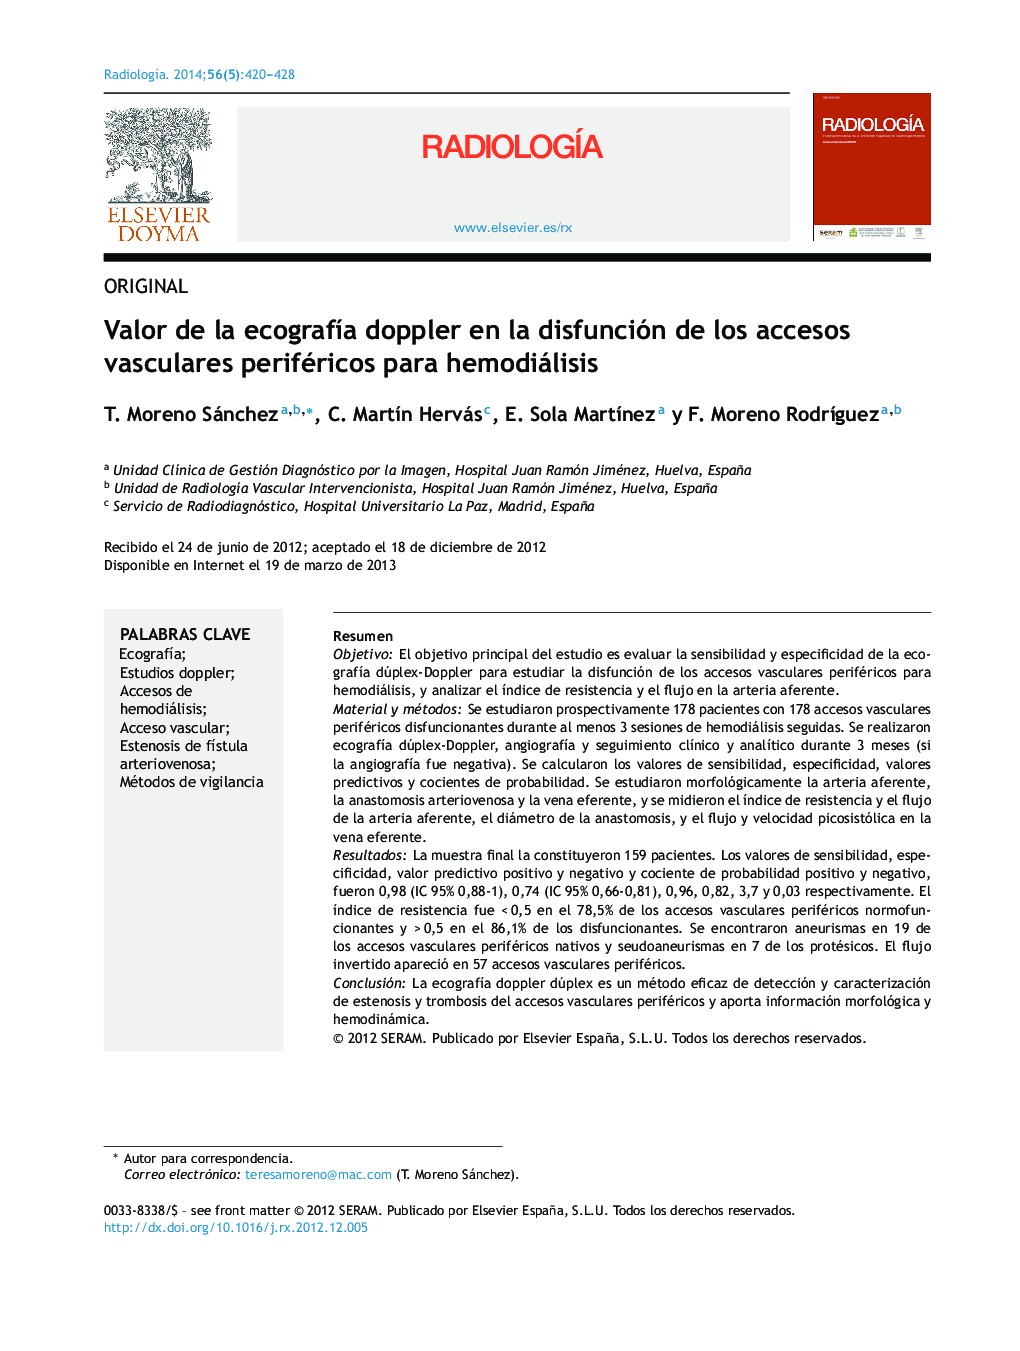 Valor de la ecografía doppler en la disfunción de los accesos vasculares periféricos para hemodiálisis